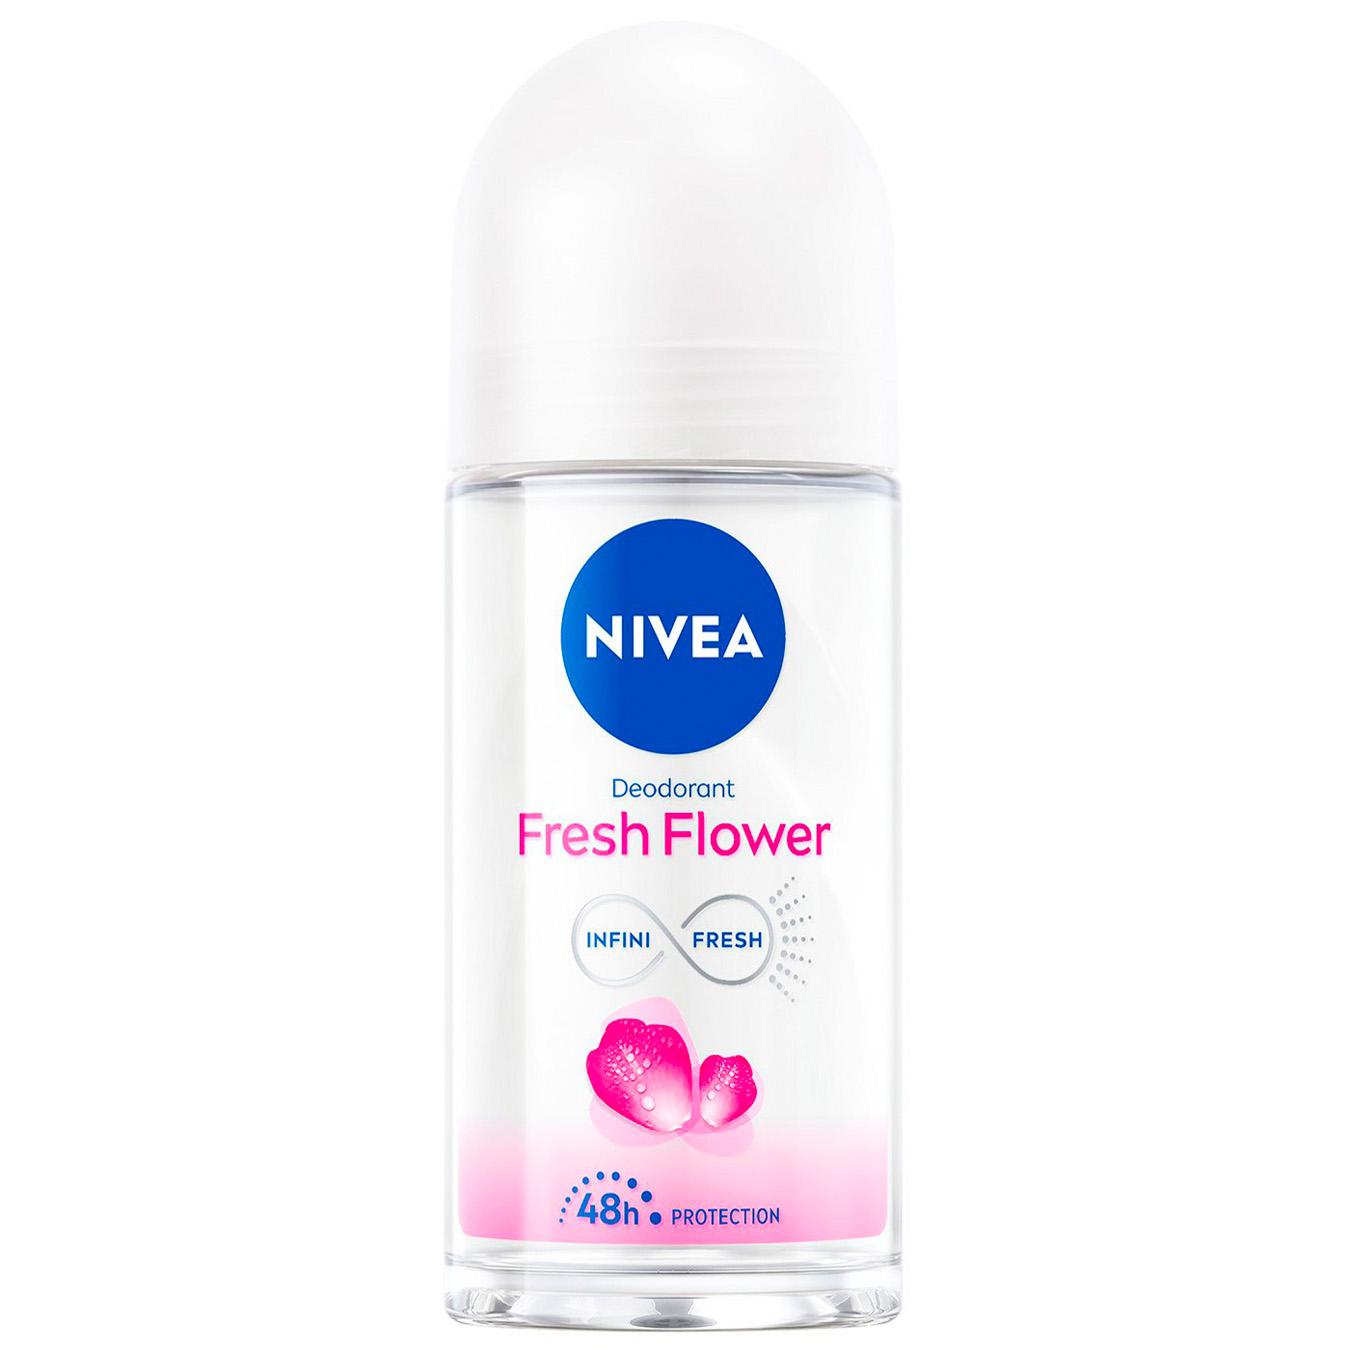 Deodorant Nivea women's ball freshness flower 50ml